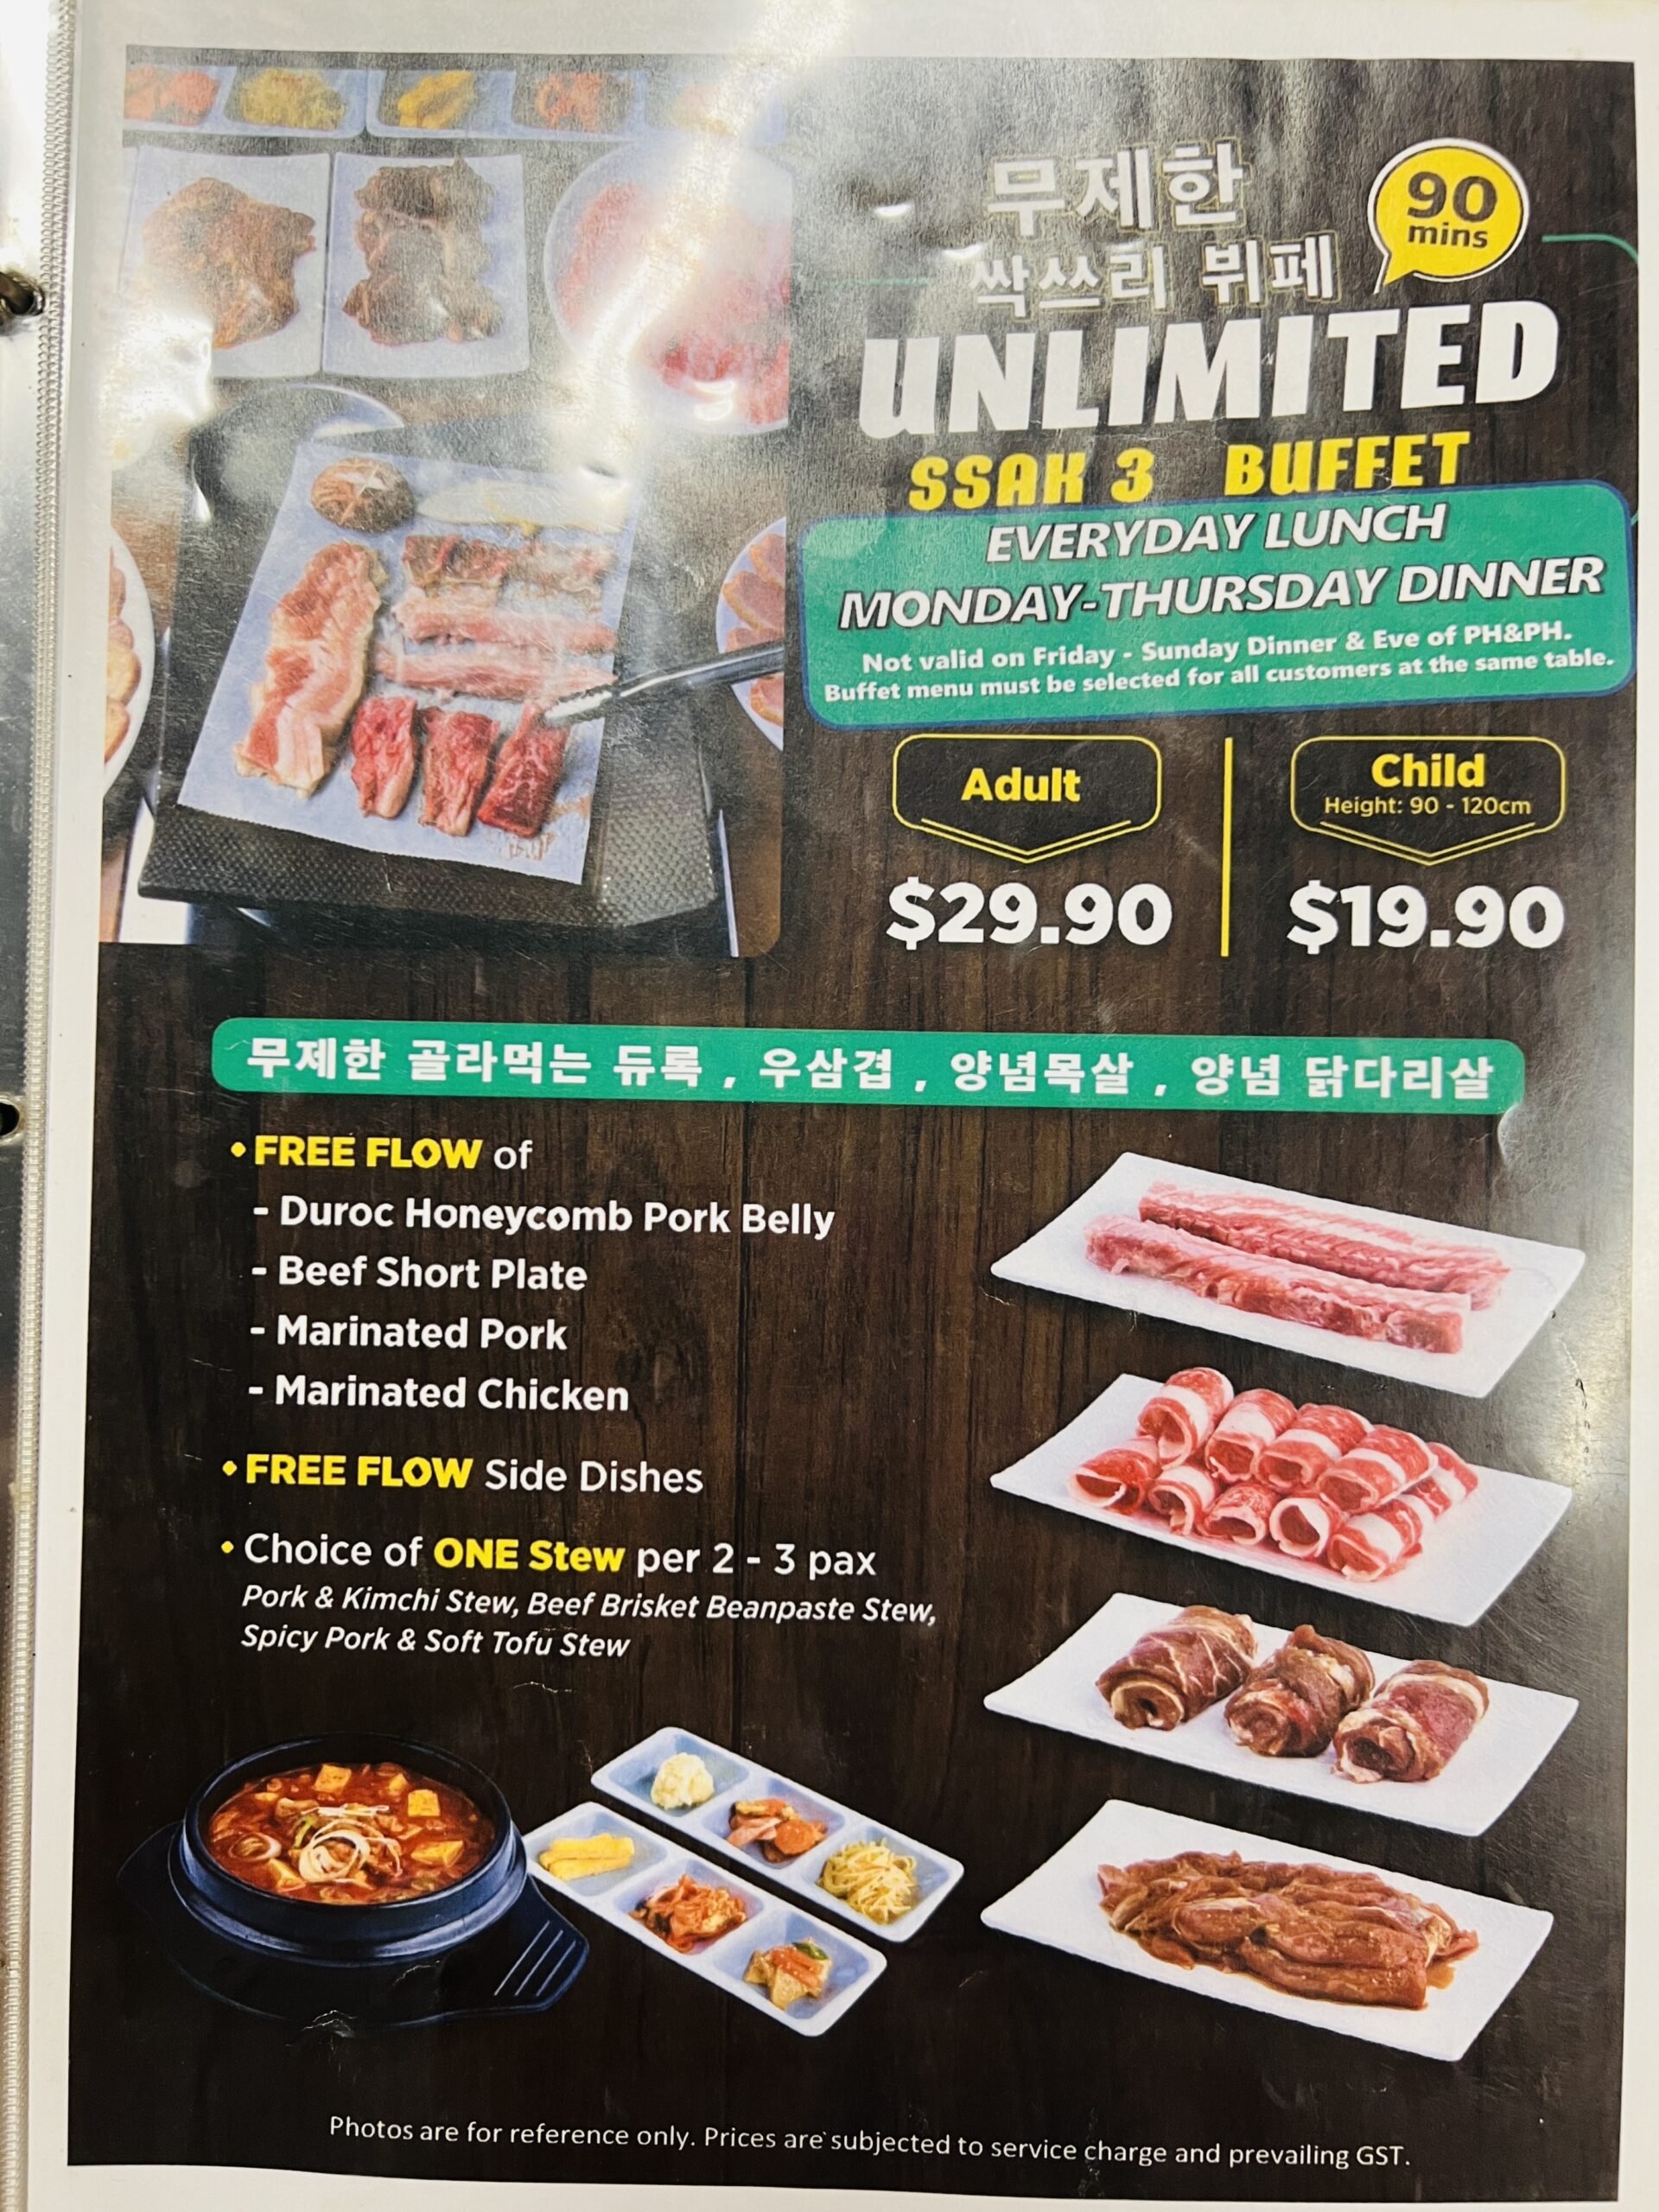 Ssak3 Korean BBQ & Bistro - 90 Minutes Unlimited Ssak3 Buffet